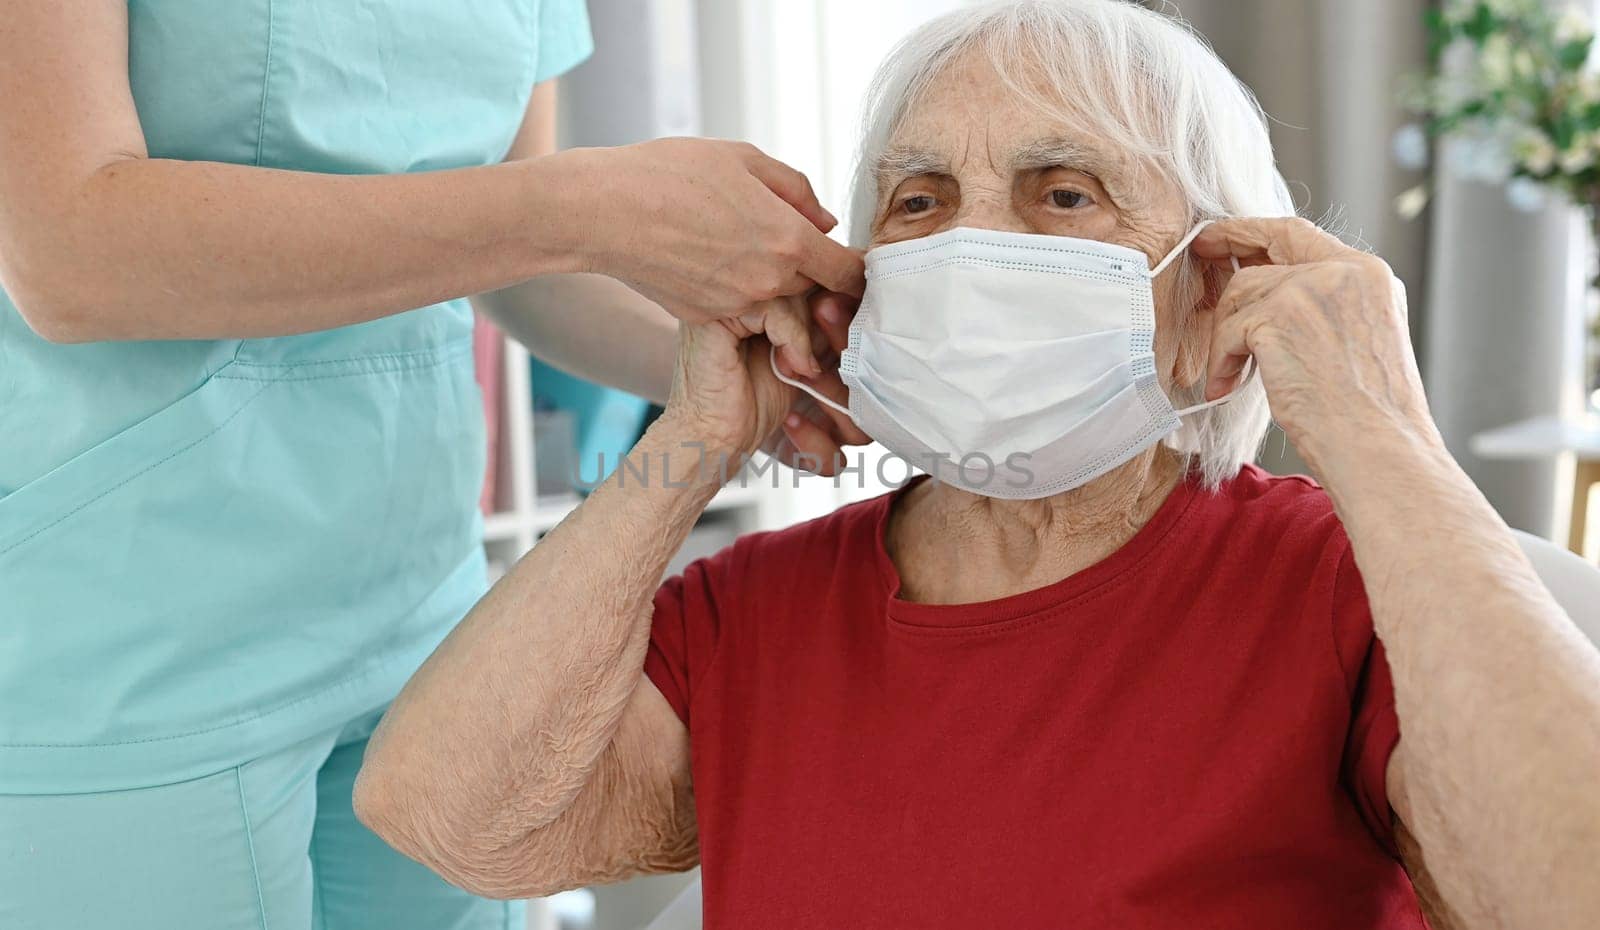 Nurse Helps Elderly Woman Put On Medical Face Mask by GekaSkr